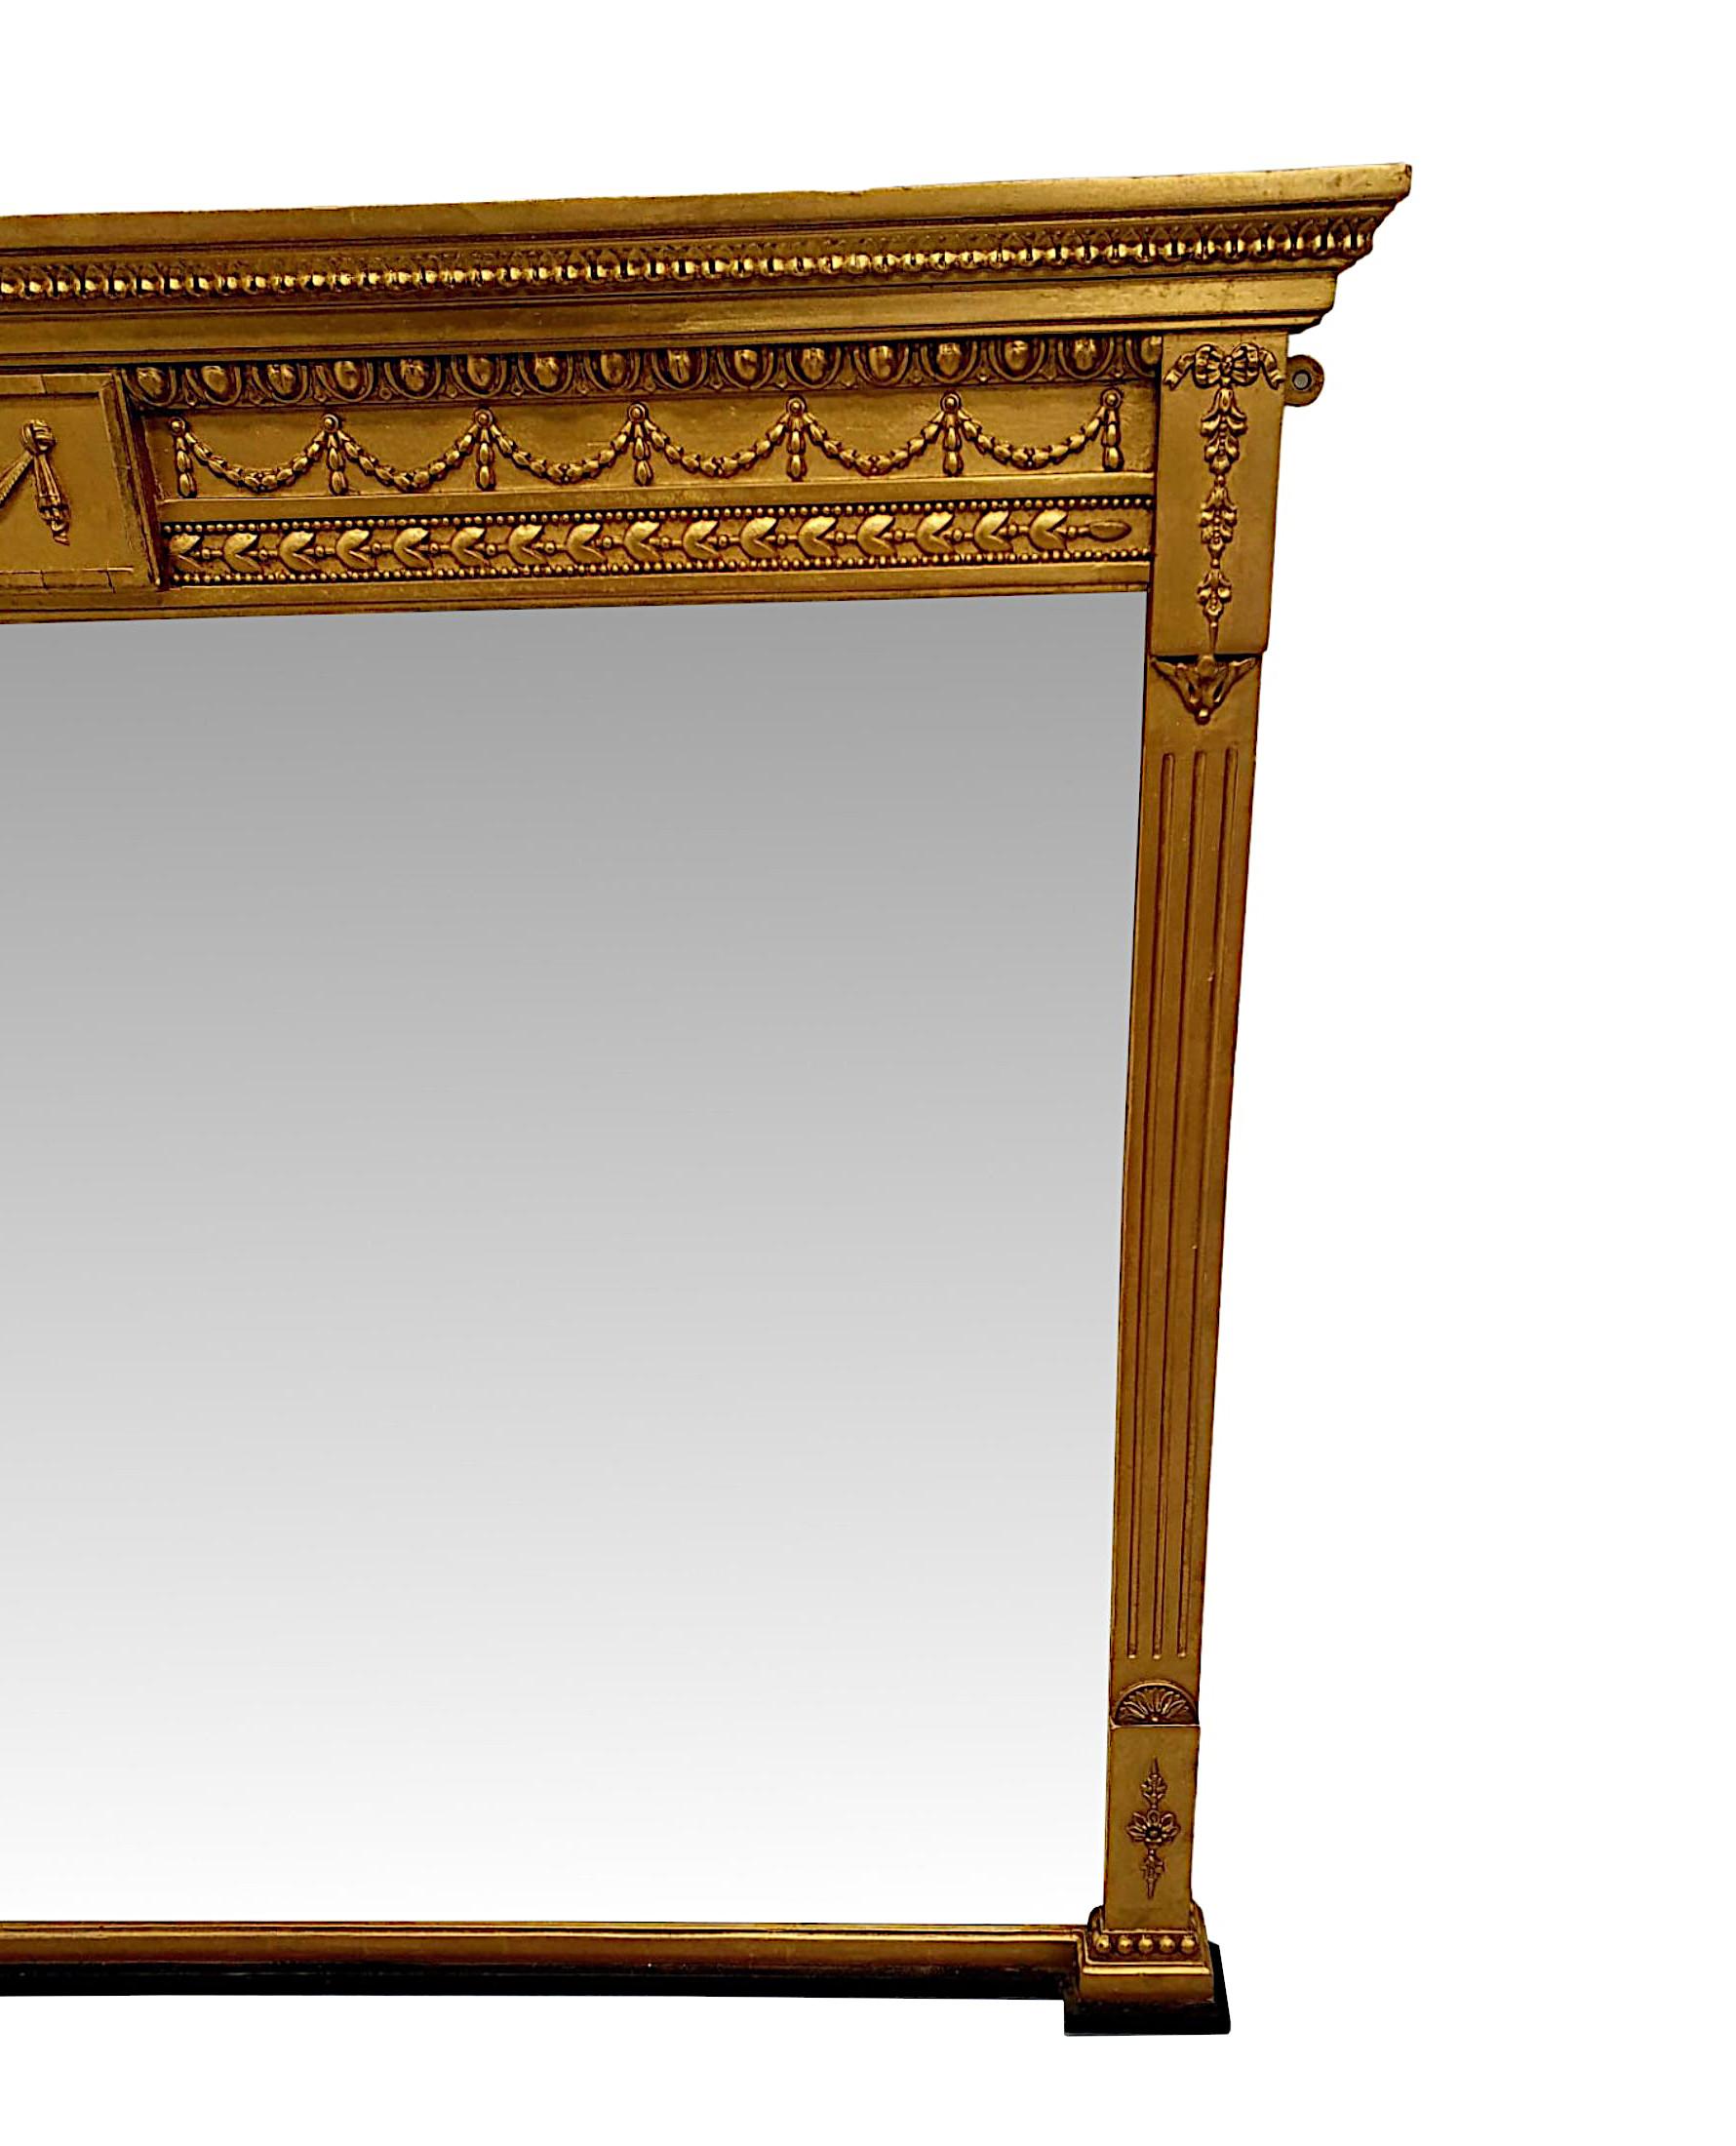 Un fabuleux miroir de hall ou de trumeau de l'époque édouardienne à la manière d'Adams, aux proportions soignées et d'une qualité exceptionnelle.  Le cadre en bois doré finement sculpté, cannelé et mouluré est surmonté d'une corniche à gradins en